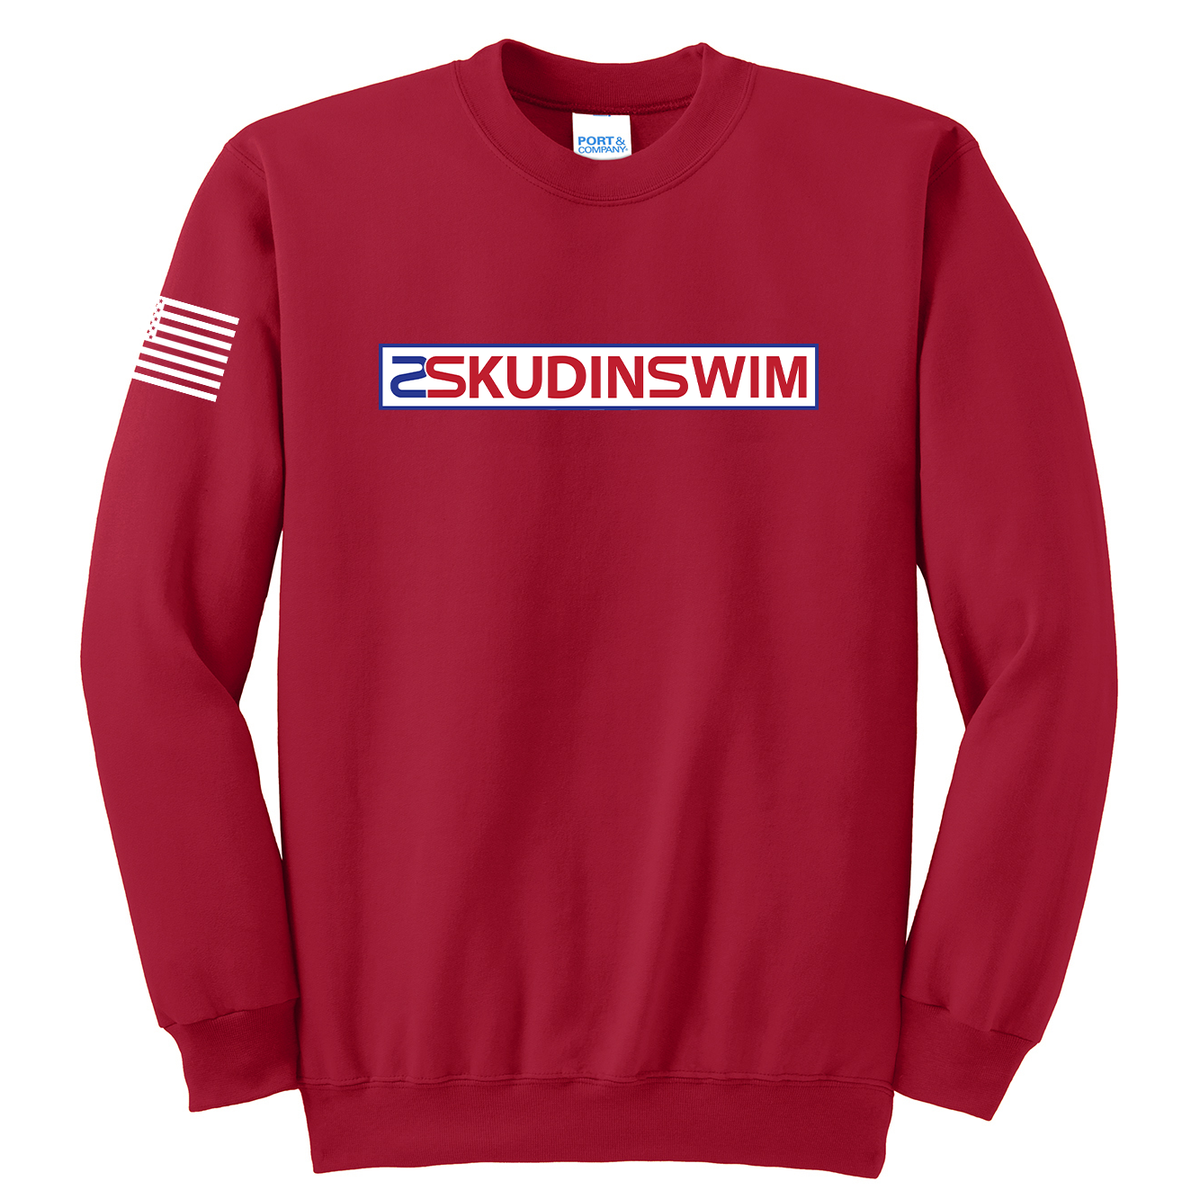 Skudin Swim Crew Neck Sweater